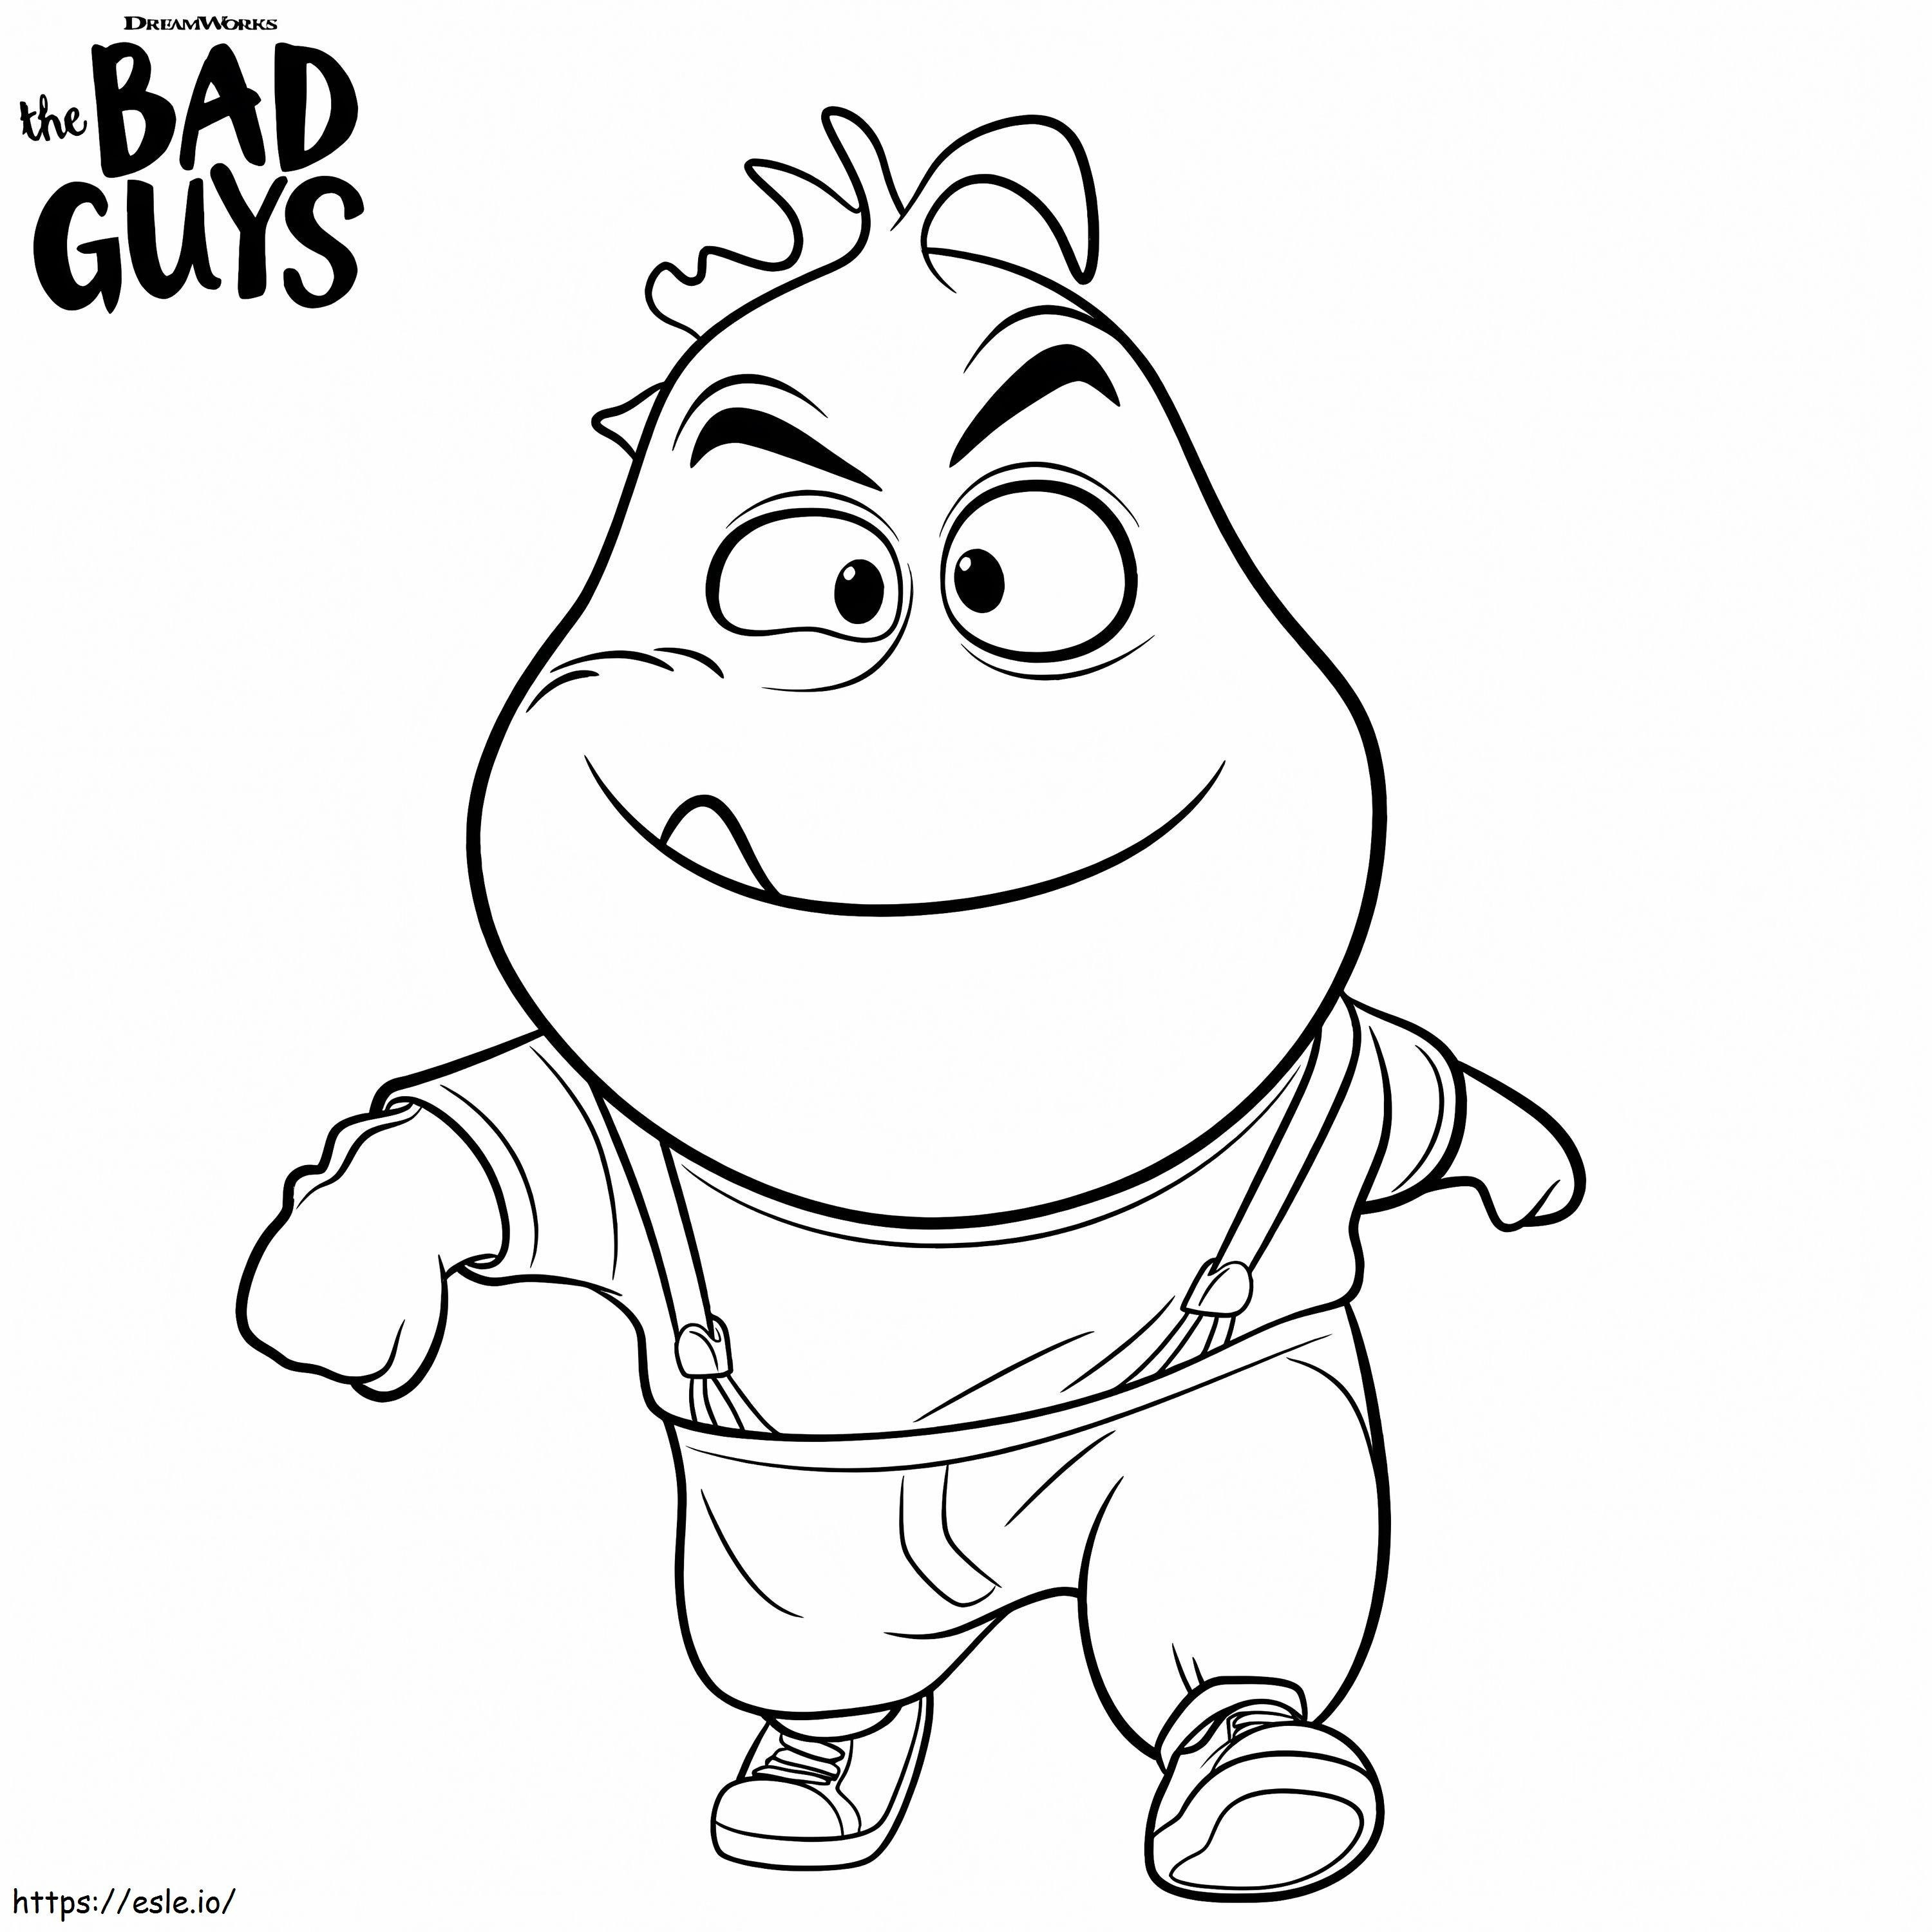 Mr. Piranha de The Bad Guys para colorir